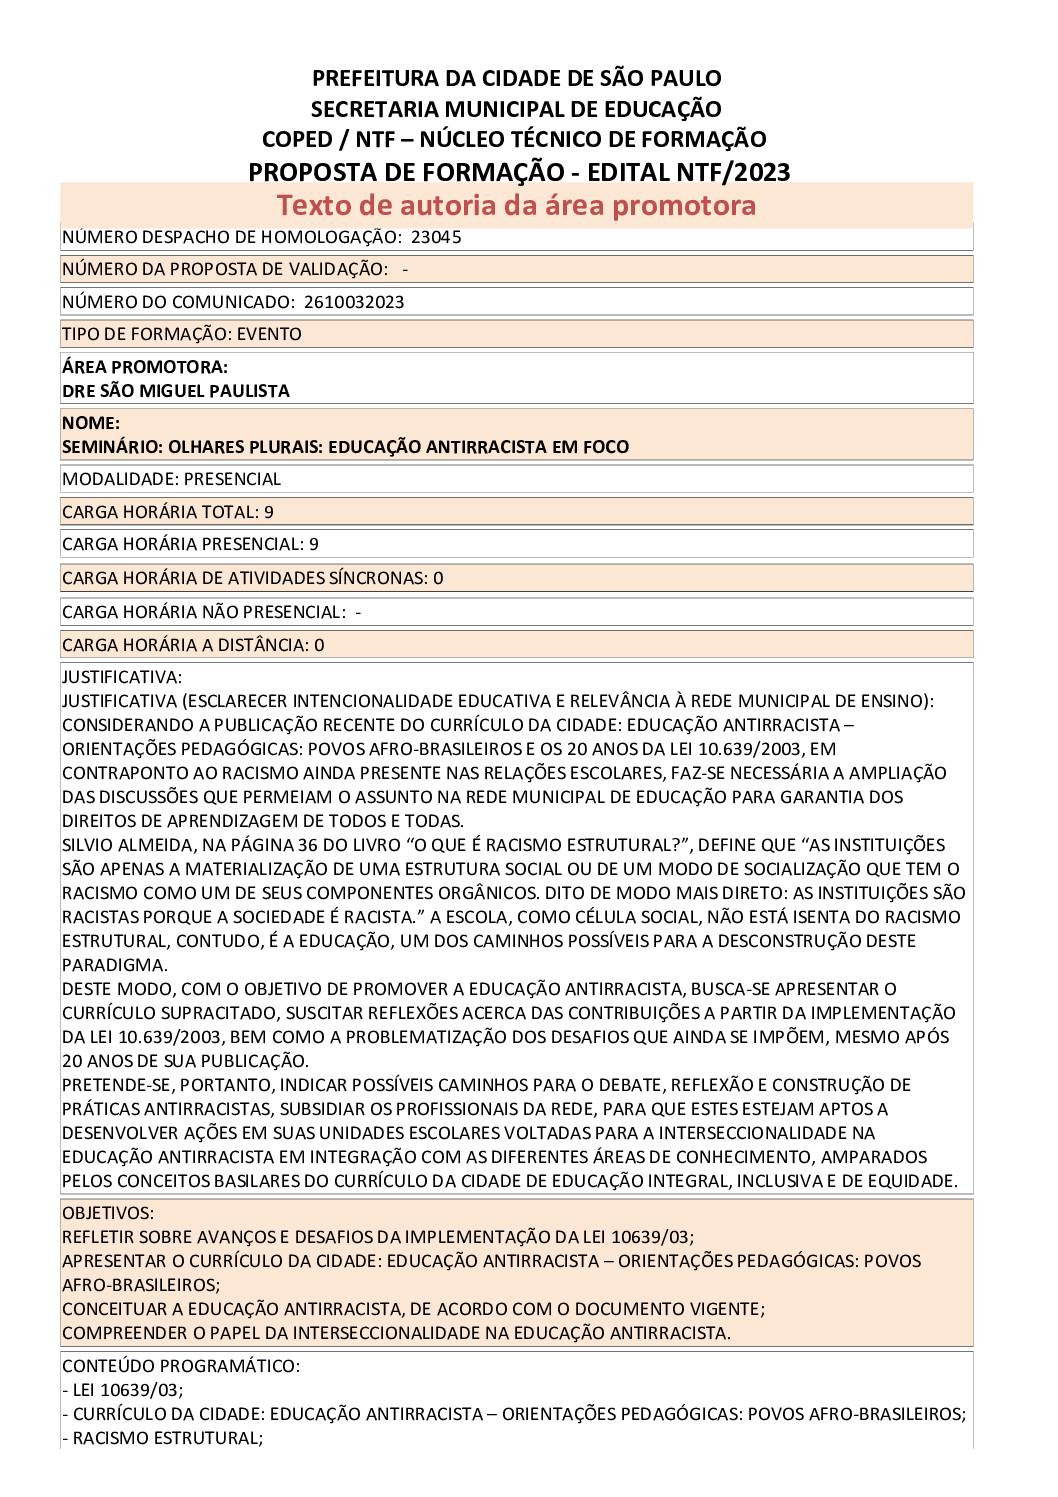 PDF com informações do evento: SEMINÁRIO: OLHARES PLURAIS: EDUCAÇÃO ANTIRRACISTA EM FOCO